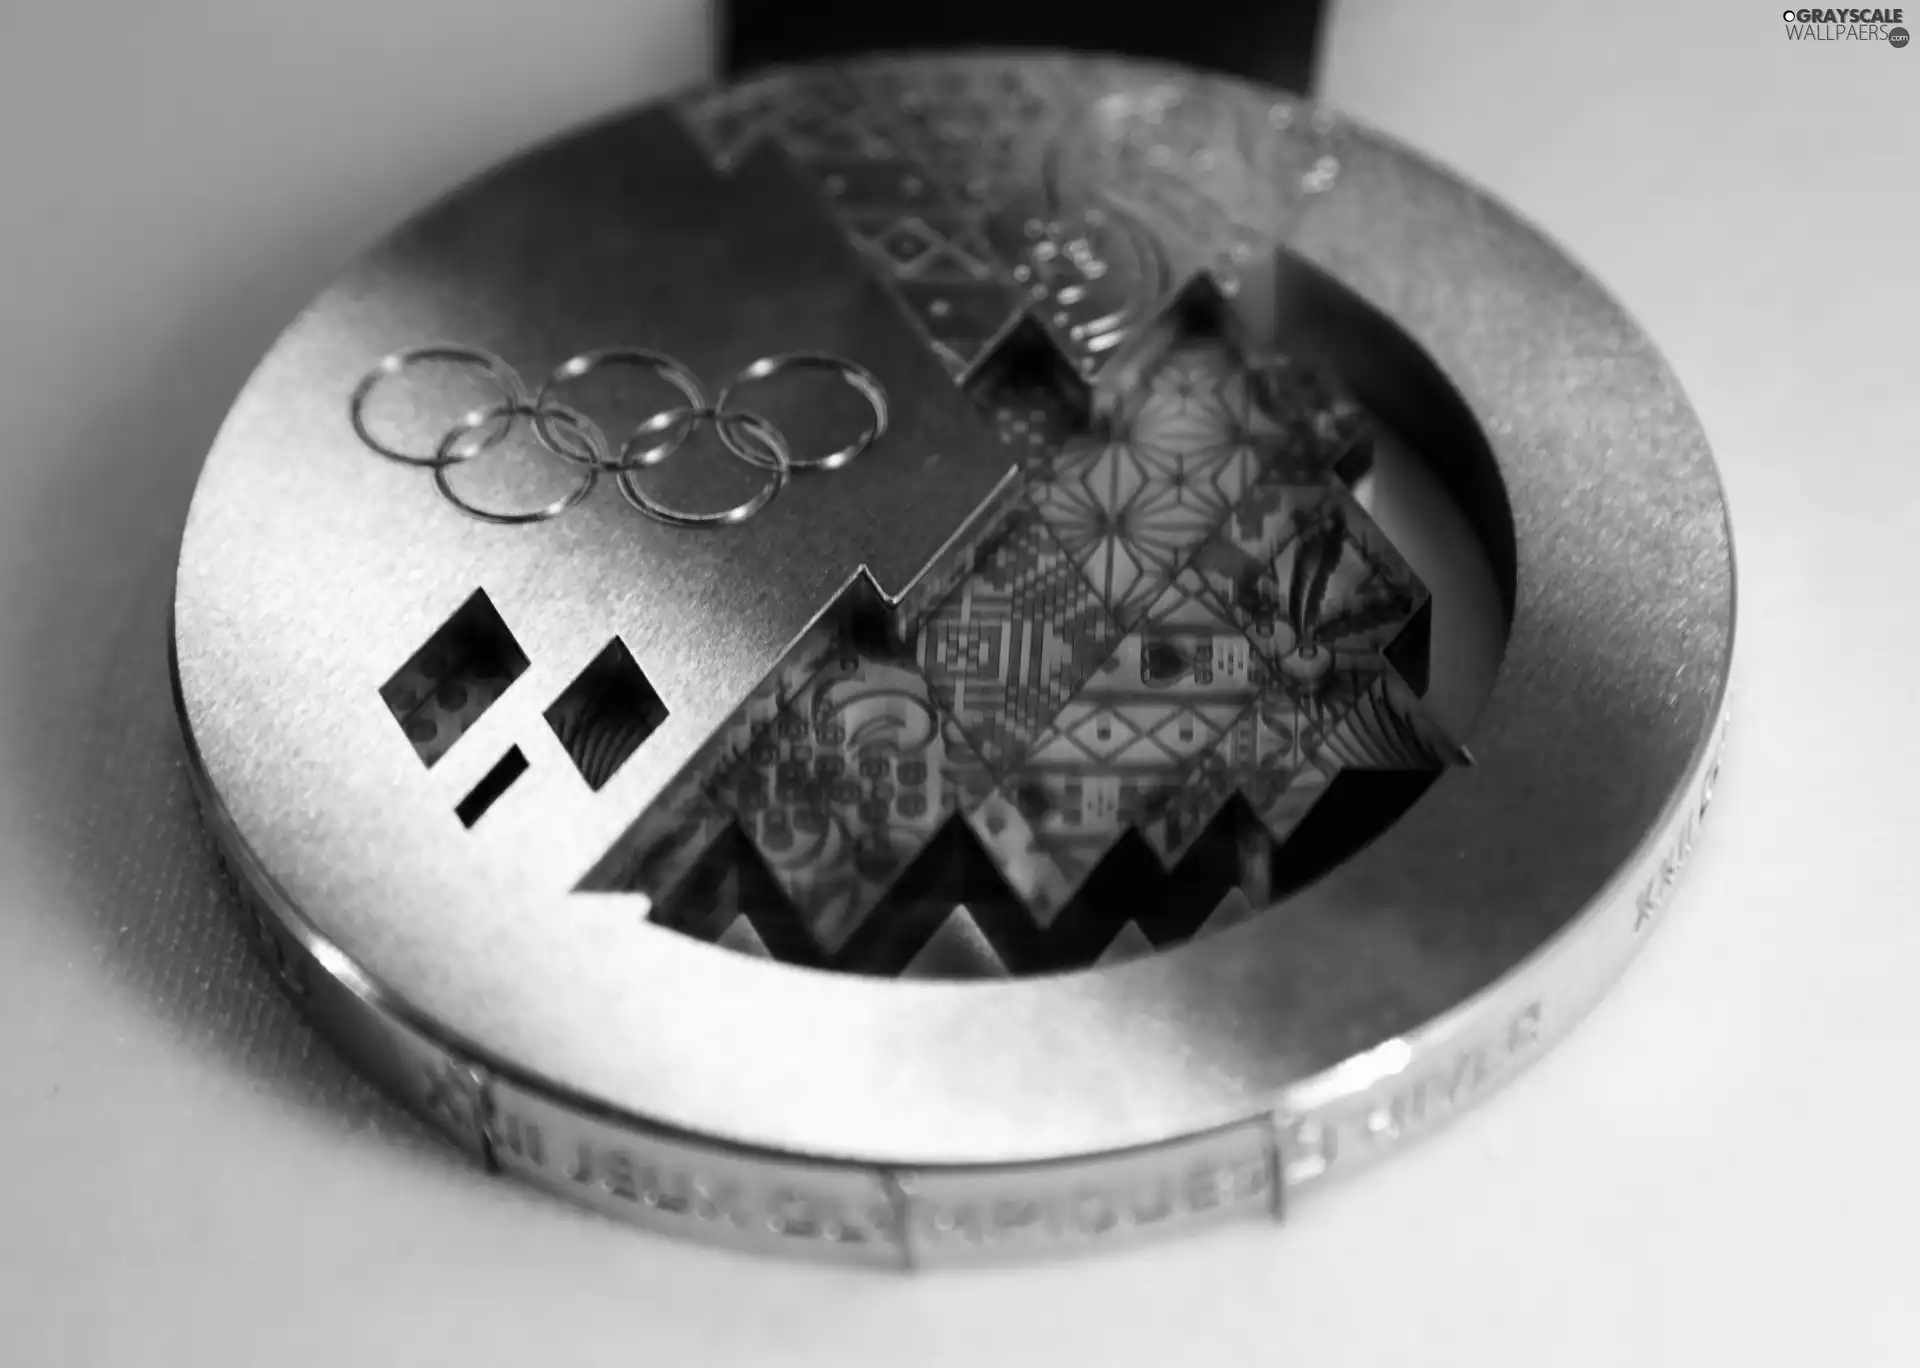 Golden, olympian, Sochi 2014, medal